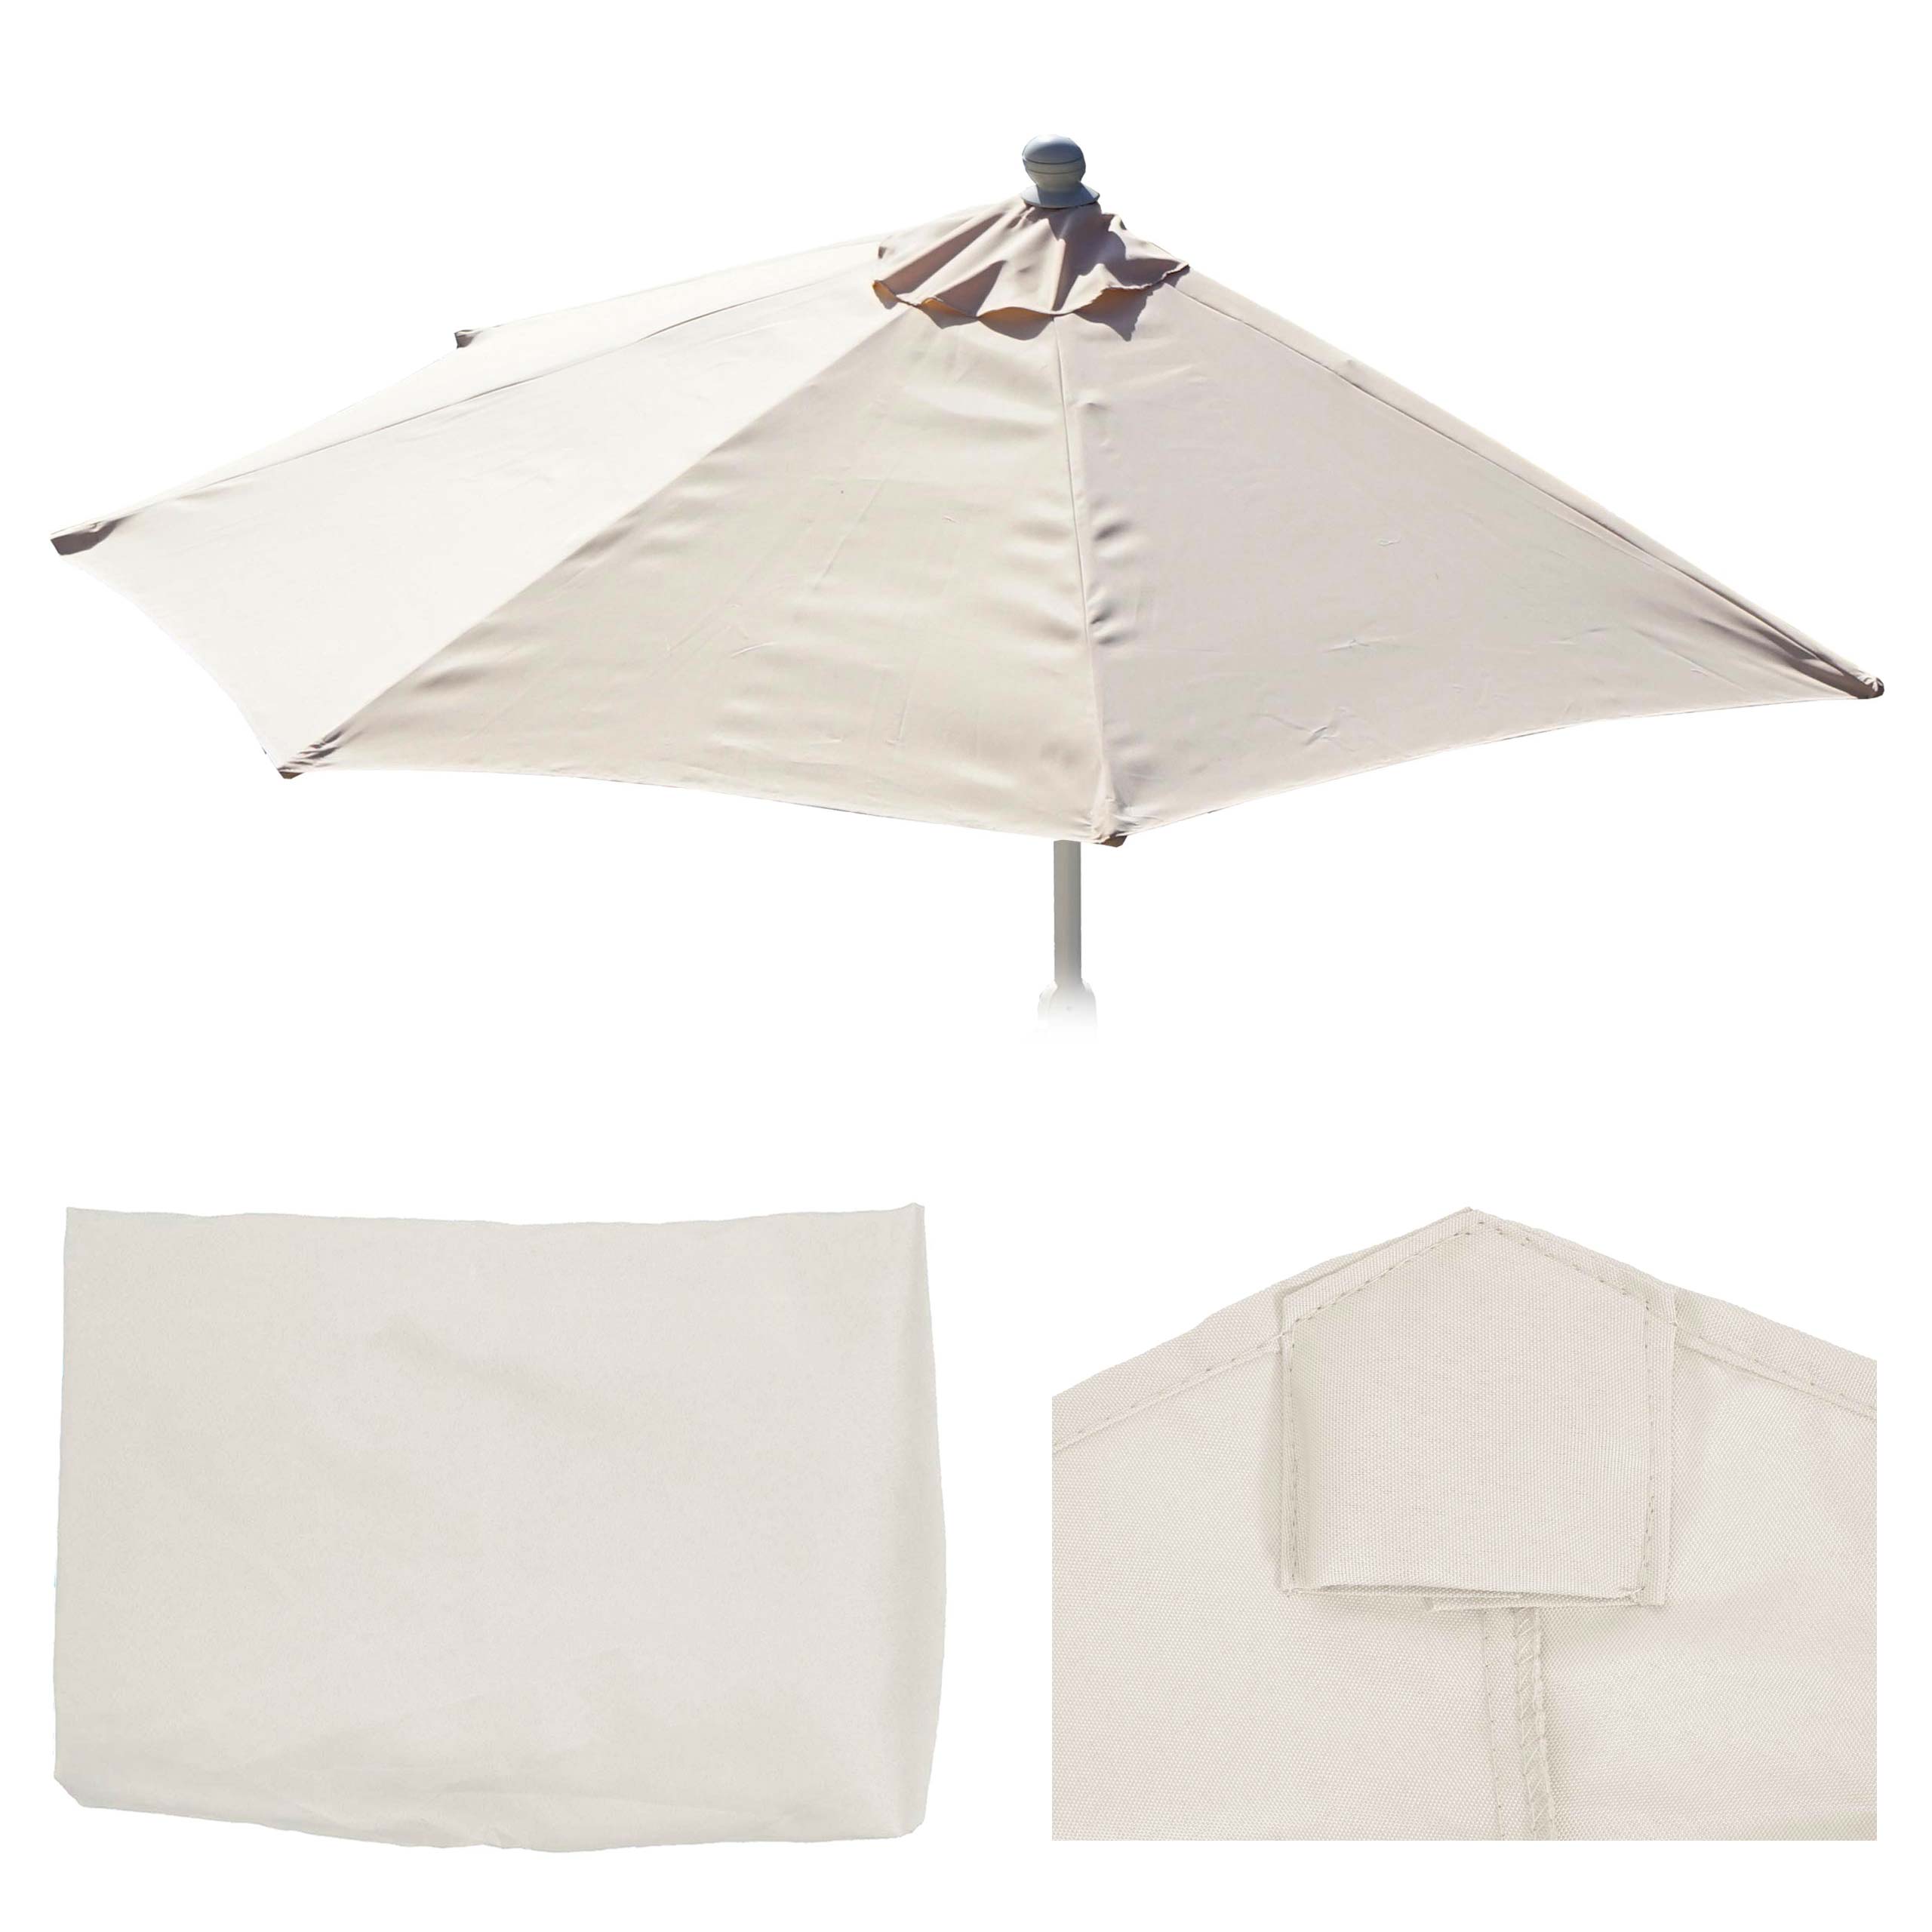 Telo copertura di ricambio per ombrellone parete semicircolare Parla  135x260cm | eBay